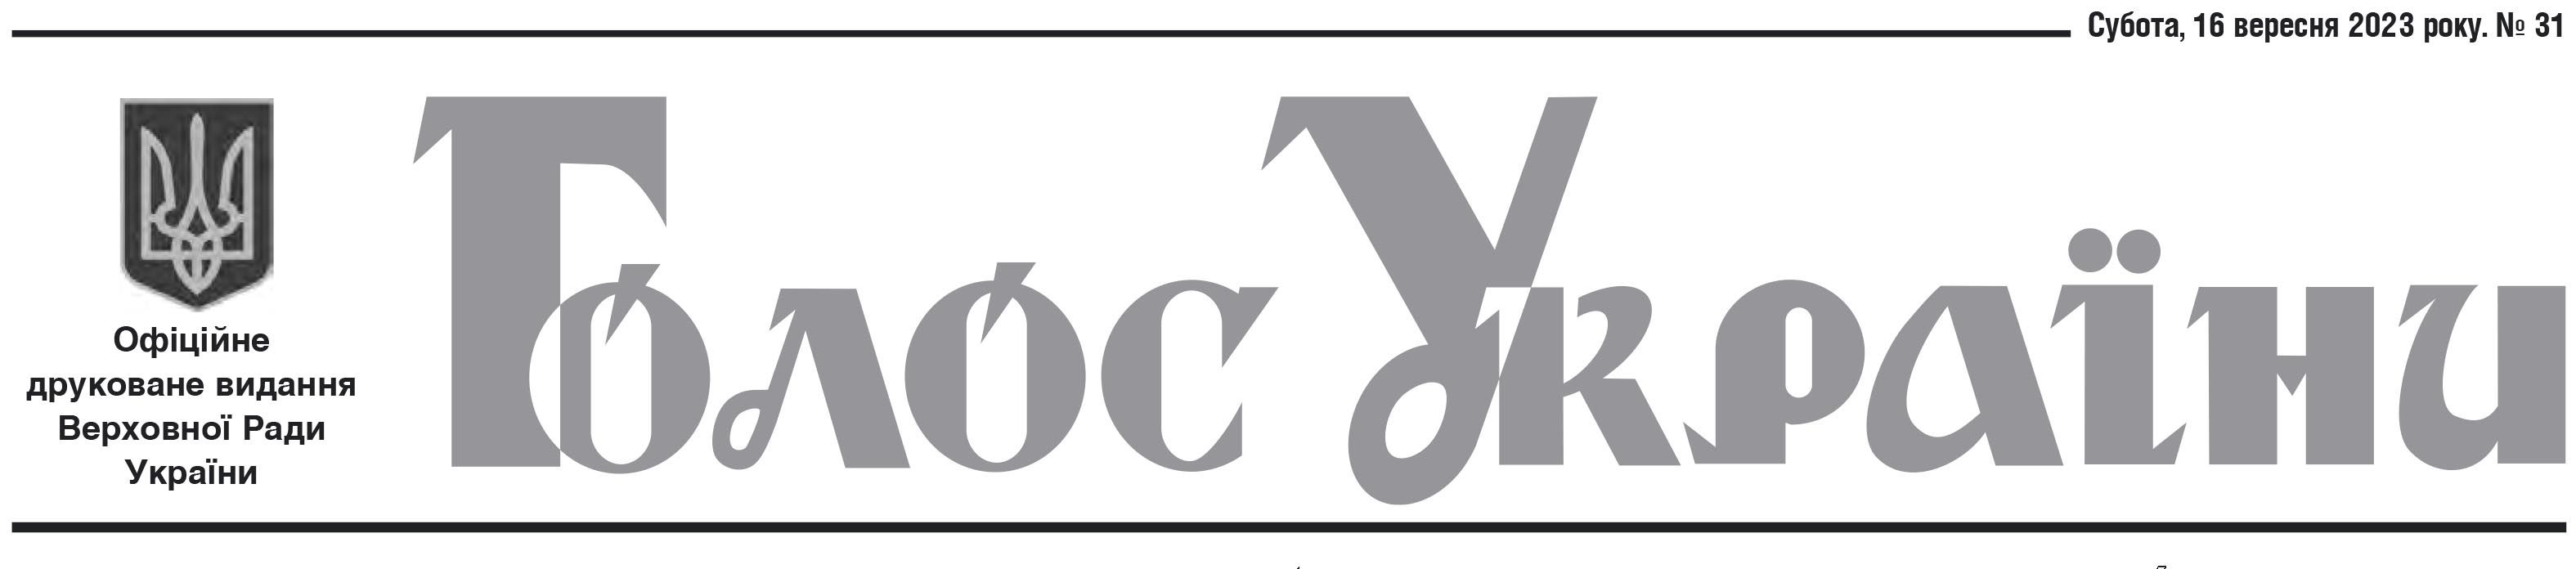 Офіційне друковане видання Верховної Ради України №31